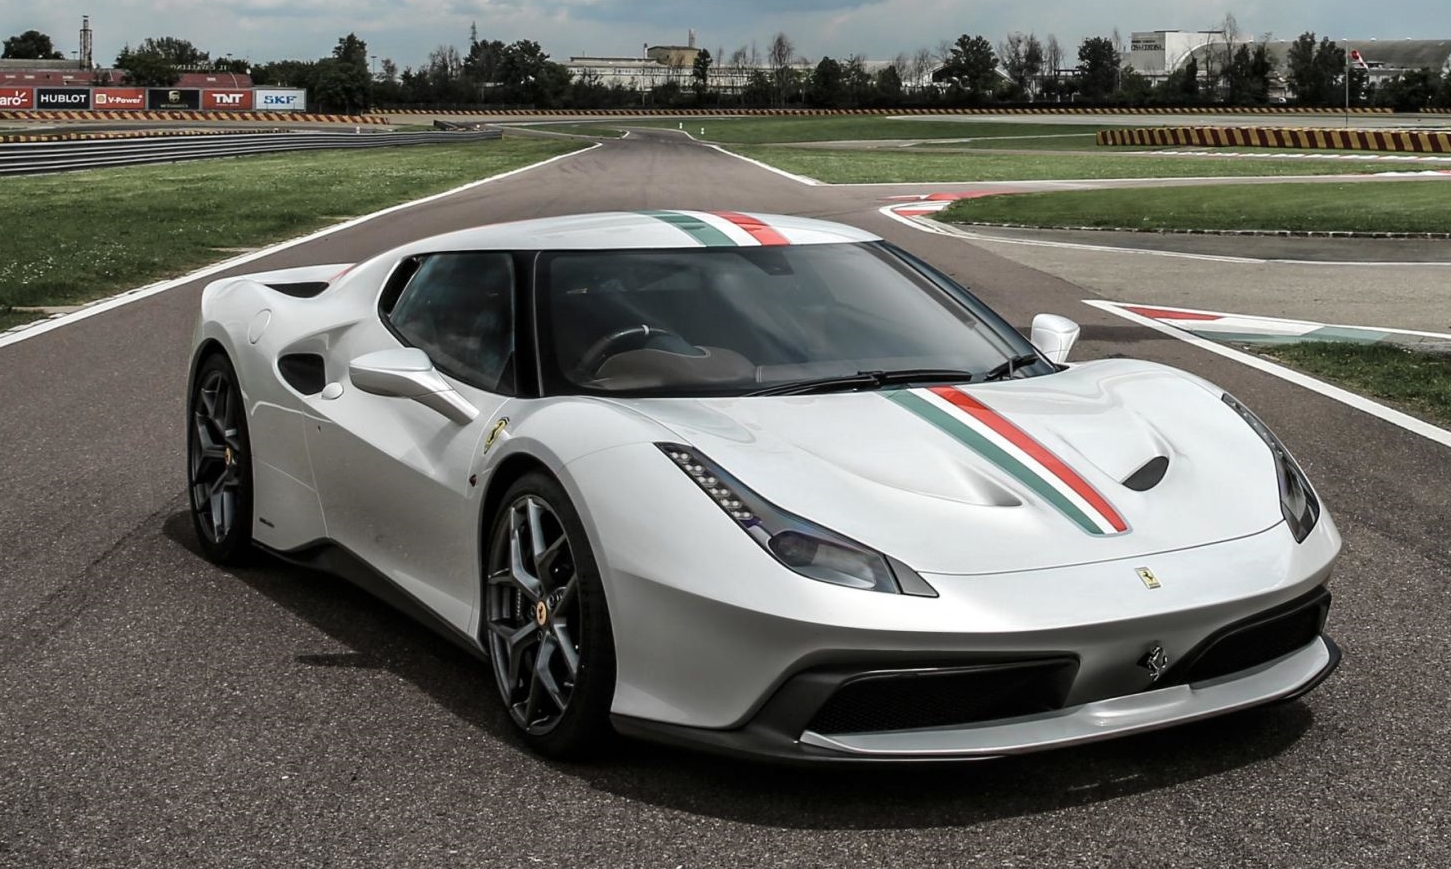 Gambar Mobil Ferrari Warna Putih